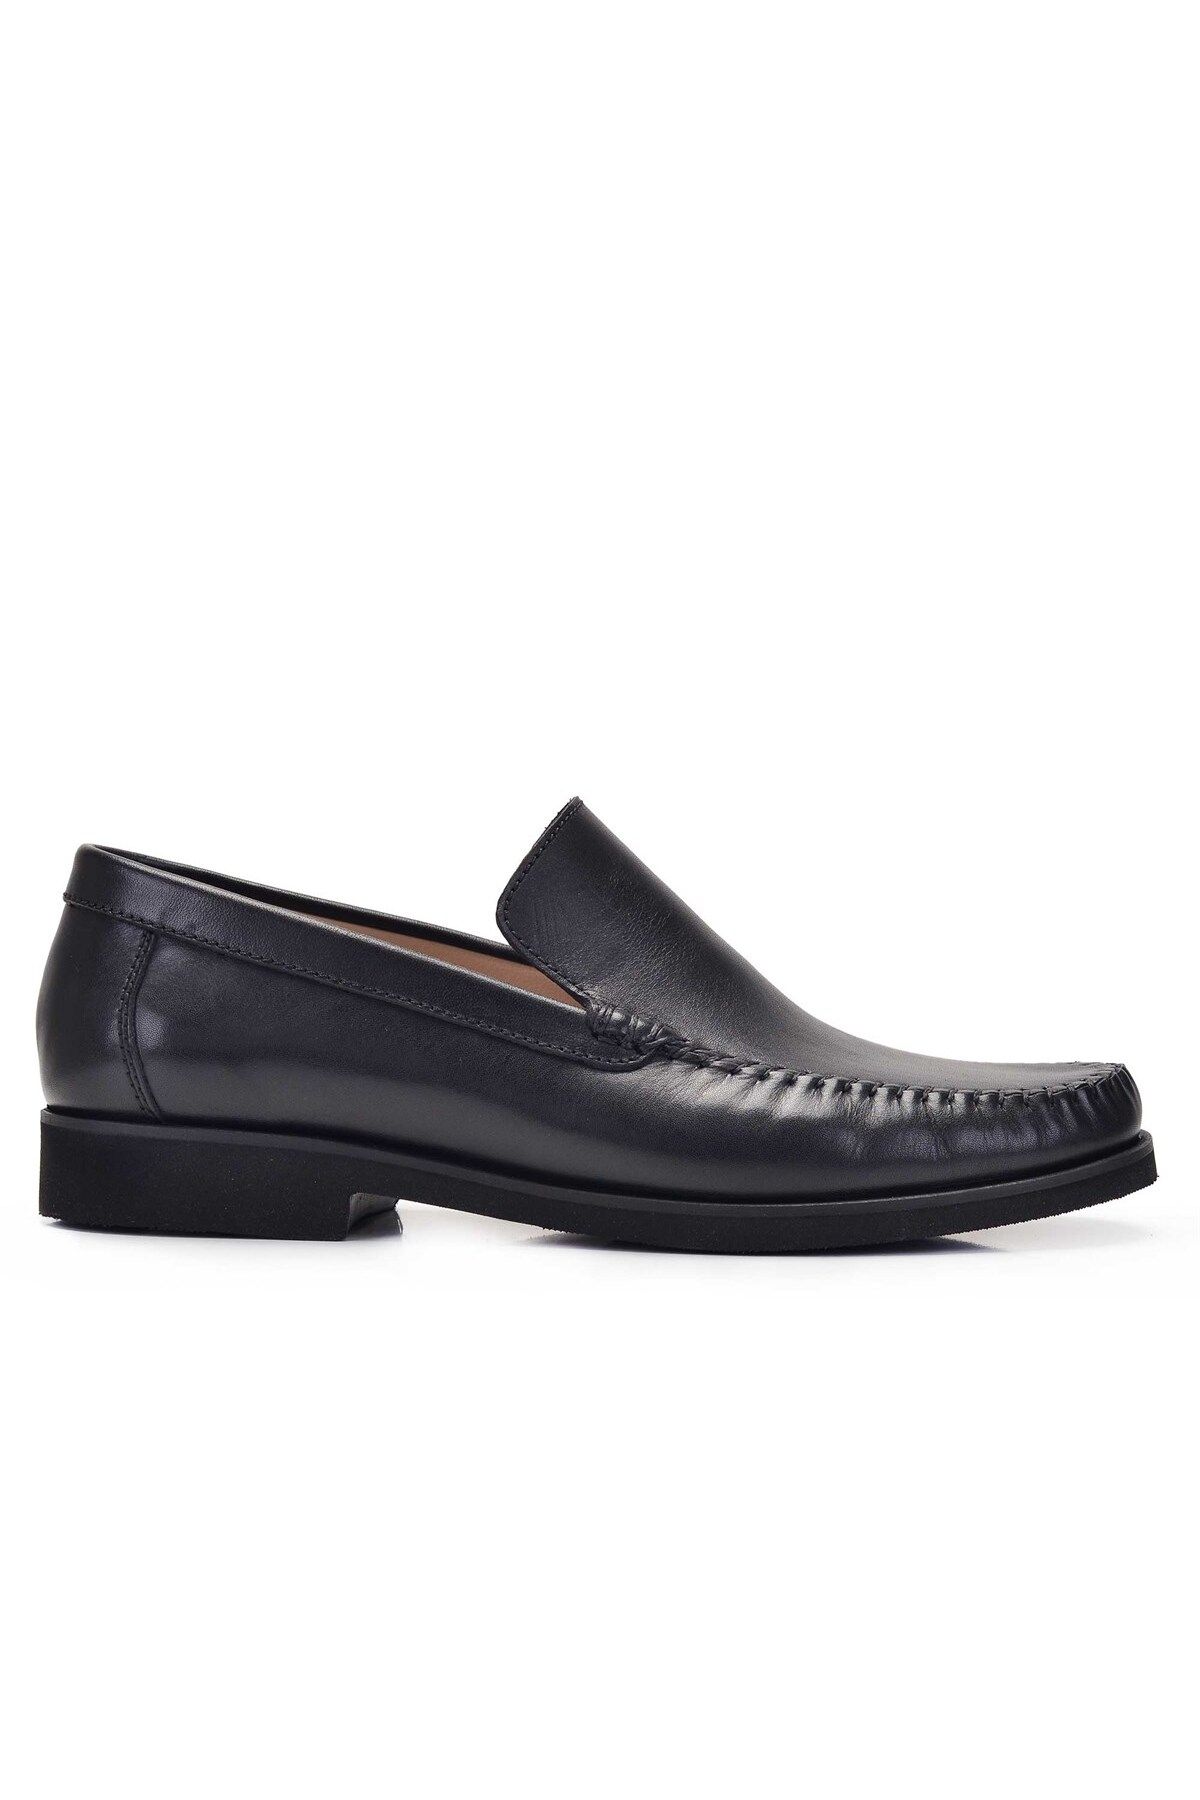 Nevzat Onay Siyah Günlük Loafer Erkek Ayakkabı- 11512-